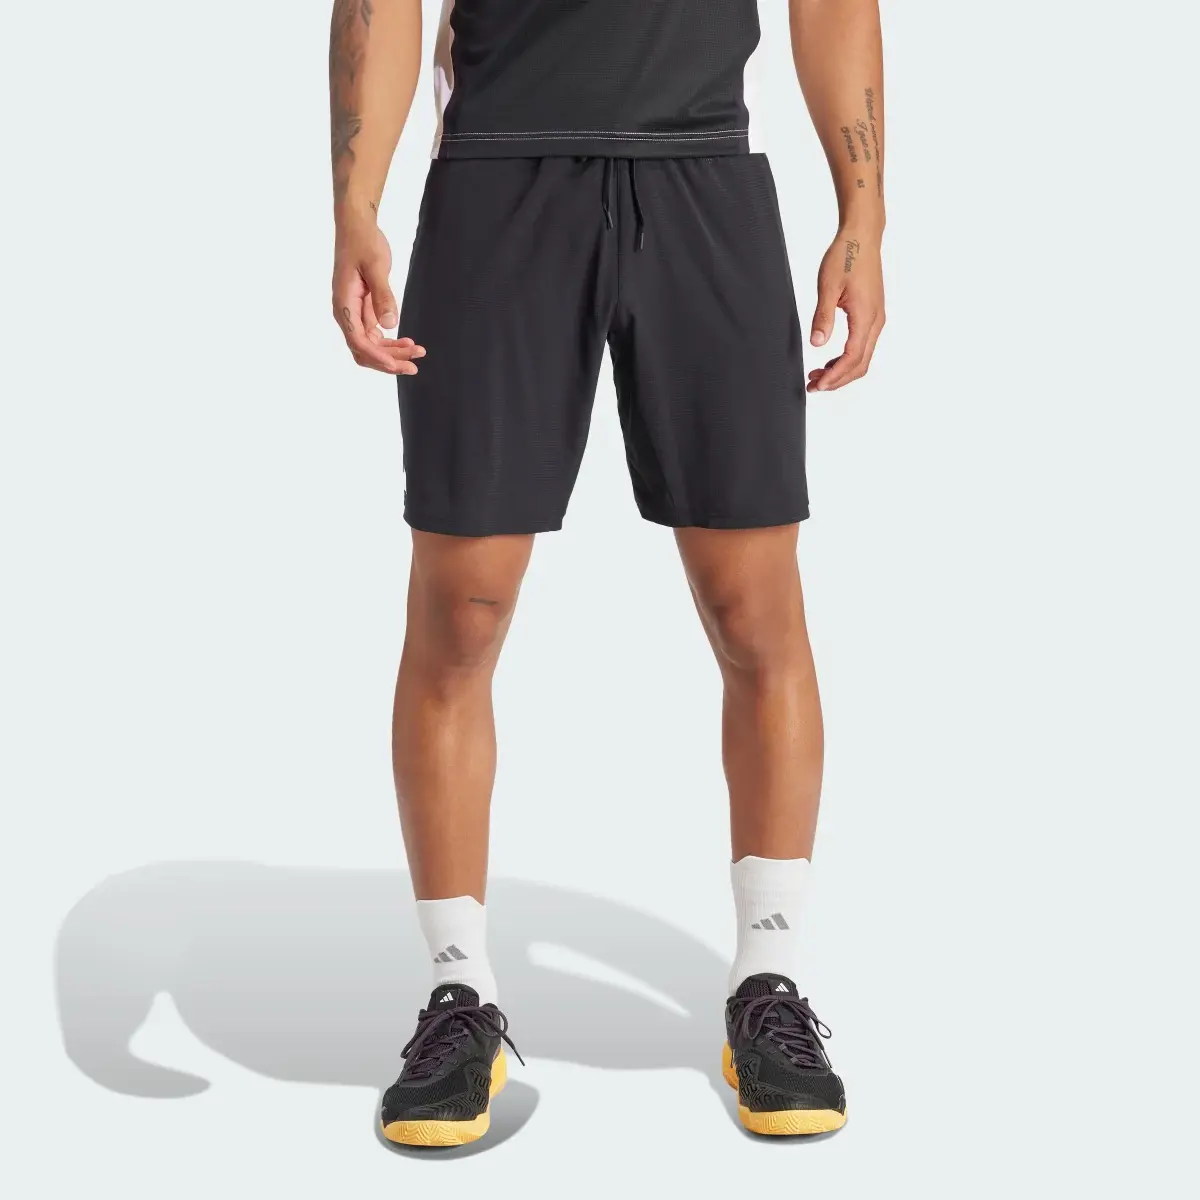 Adidas Tennis Ergo Shorts. 2